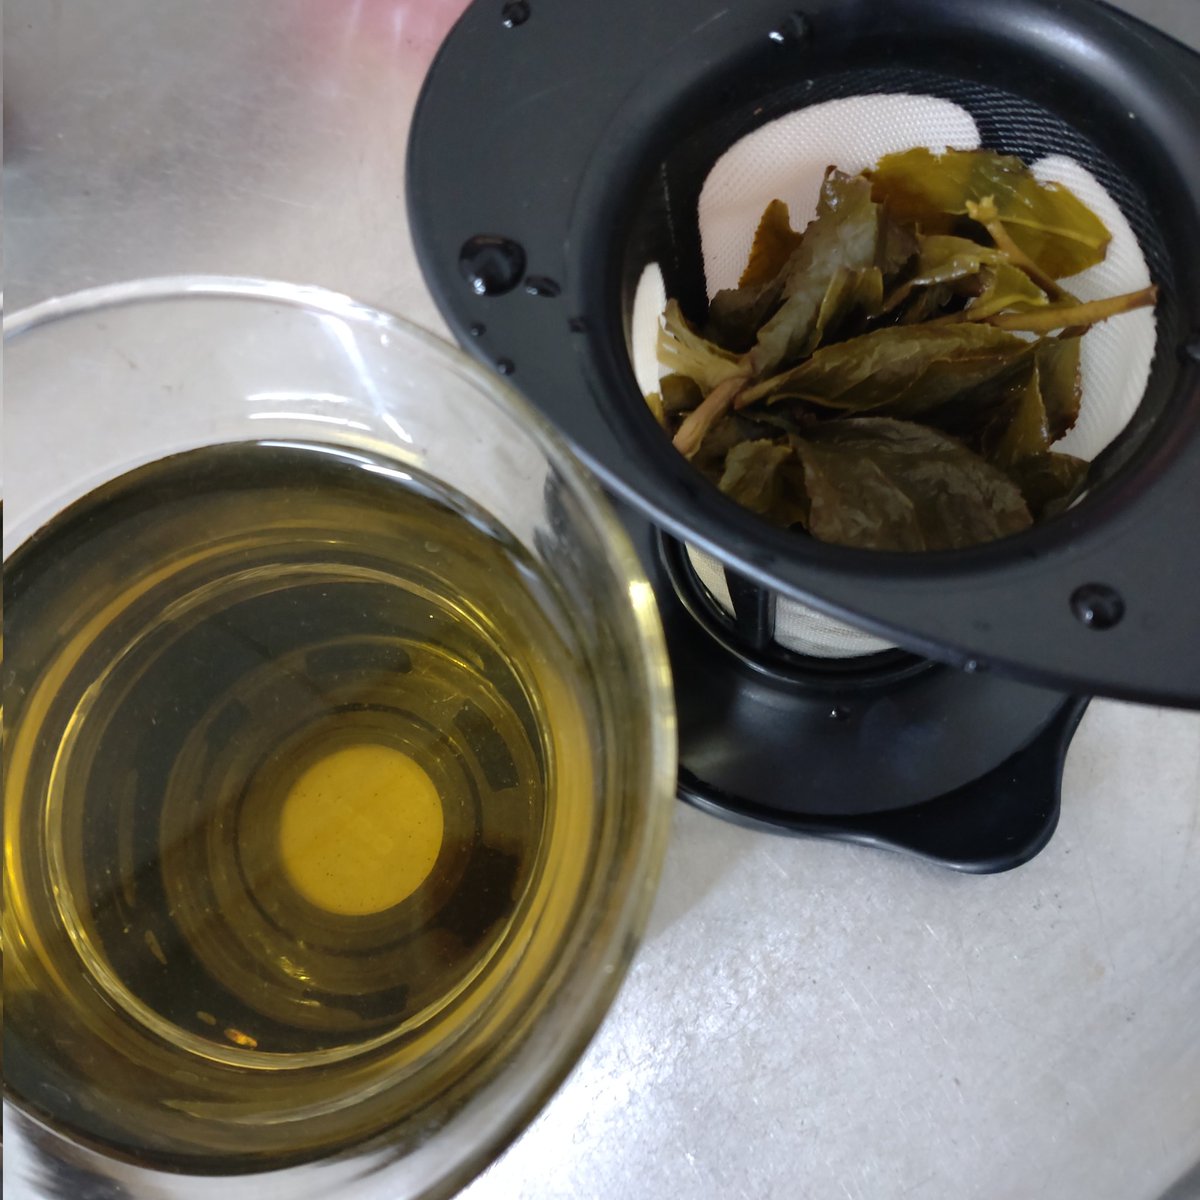 「いい台湾烏龍茶の茶葉の蘇りっぷりが凄くて、毎回「葉っぱだ!」ってなる 」|くらた🐞のイラスト